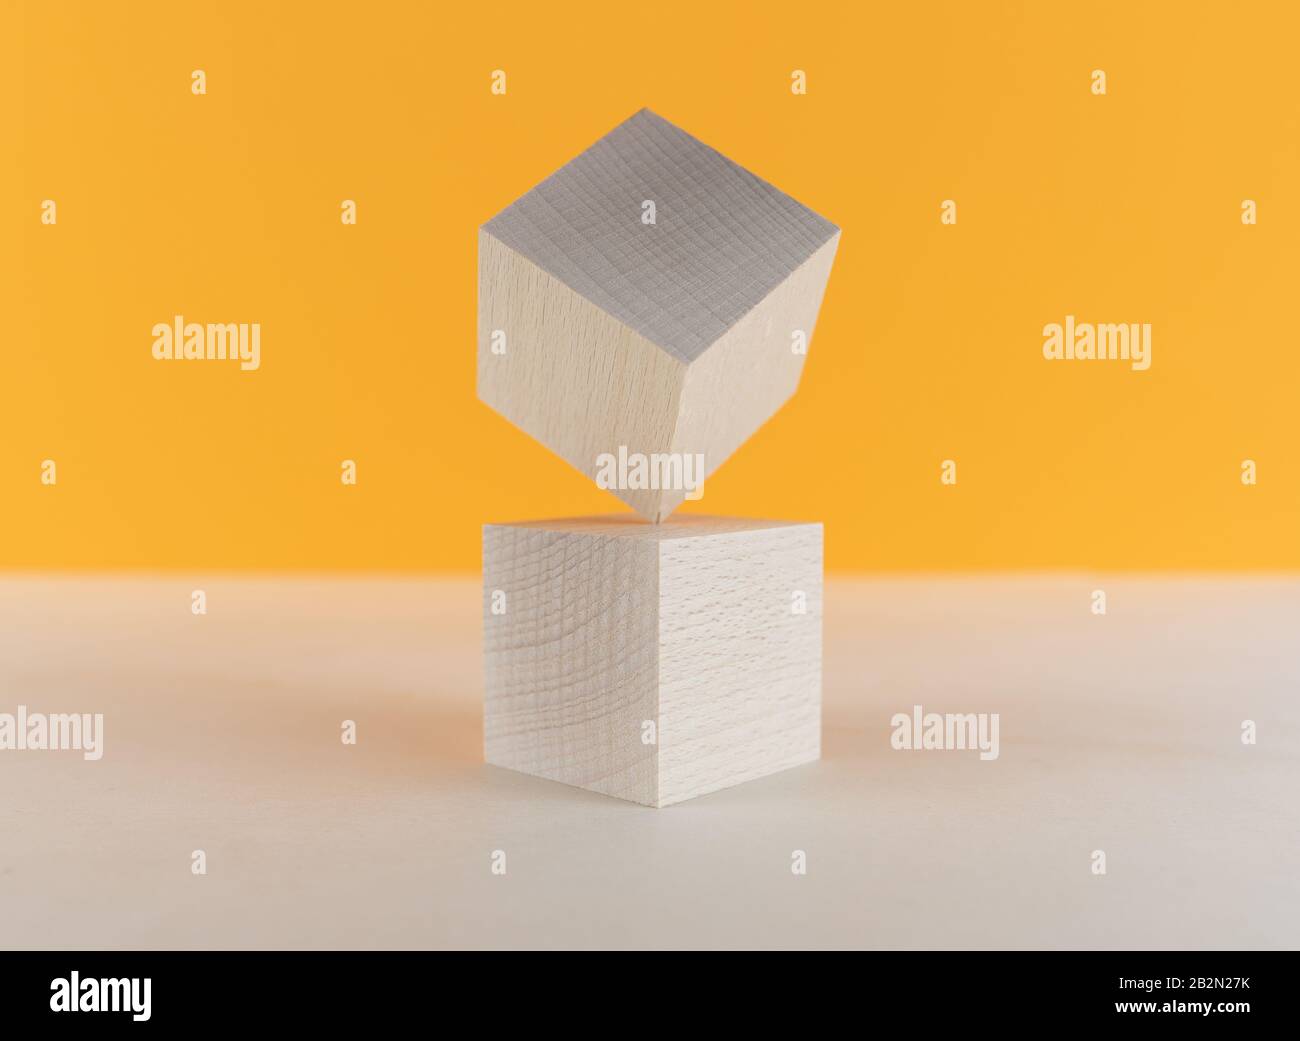 cube en bois équilibré sur un coin sur un autre, concept de risque et d'équilibre Banque D'Images